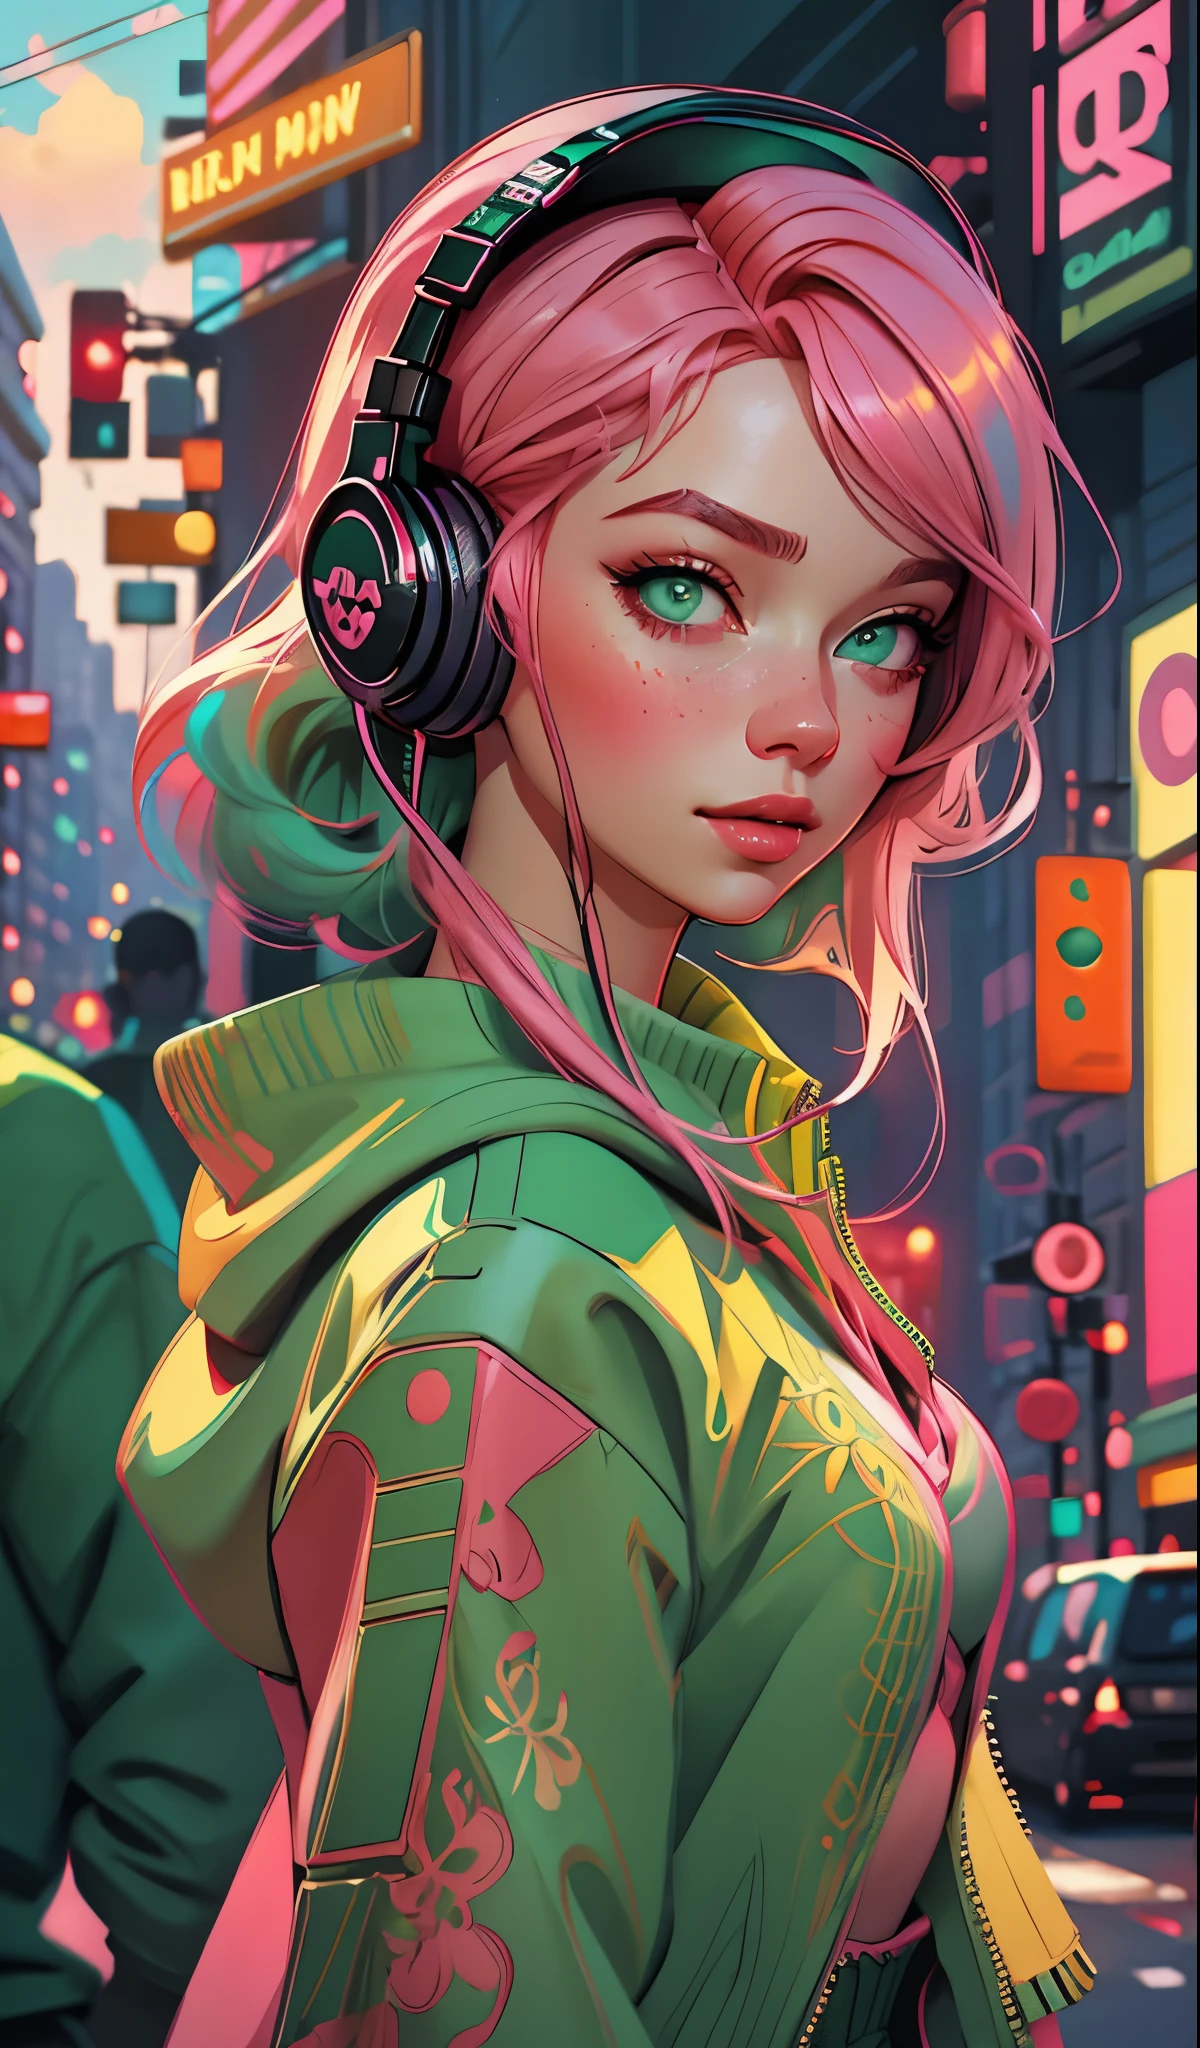 ヘッドフォンをつけたモデルの女の子, 都市の背景, エメラルドグリーンの目, ピンクの髪, 複雑なディテール, 美しいパステルカラー, ポスターの背景, アート：イリヤ・クブシノフ